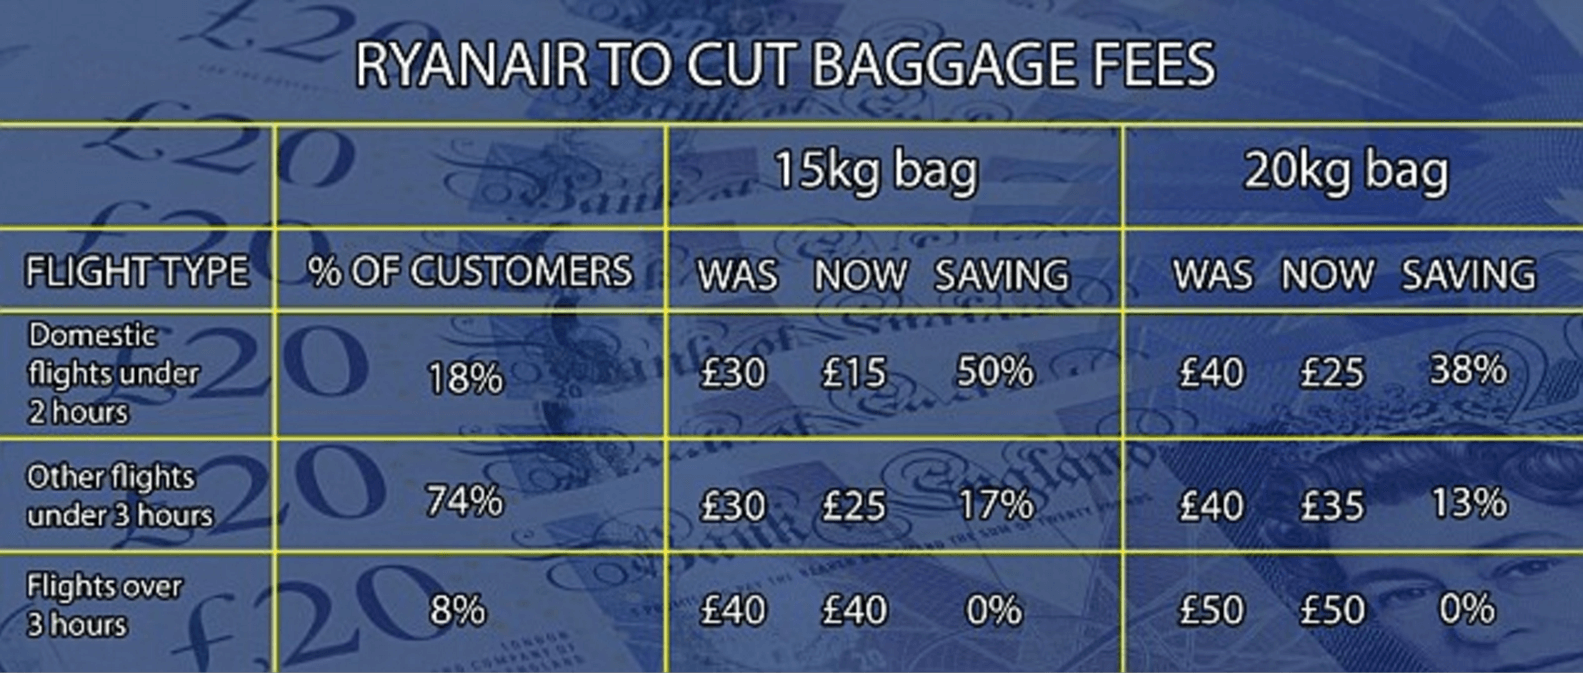 ryanair luggage cut